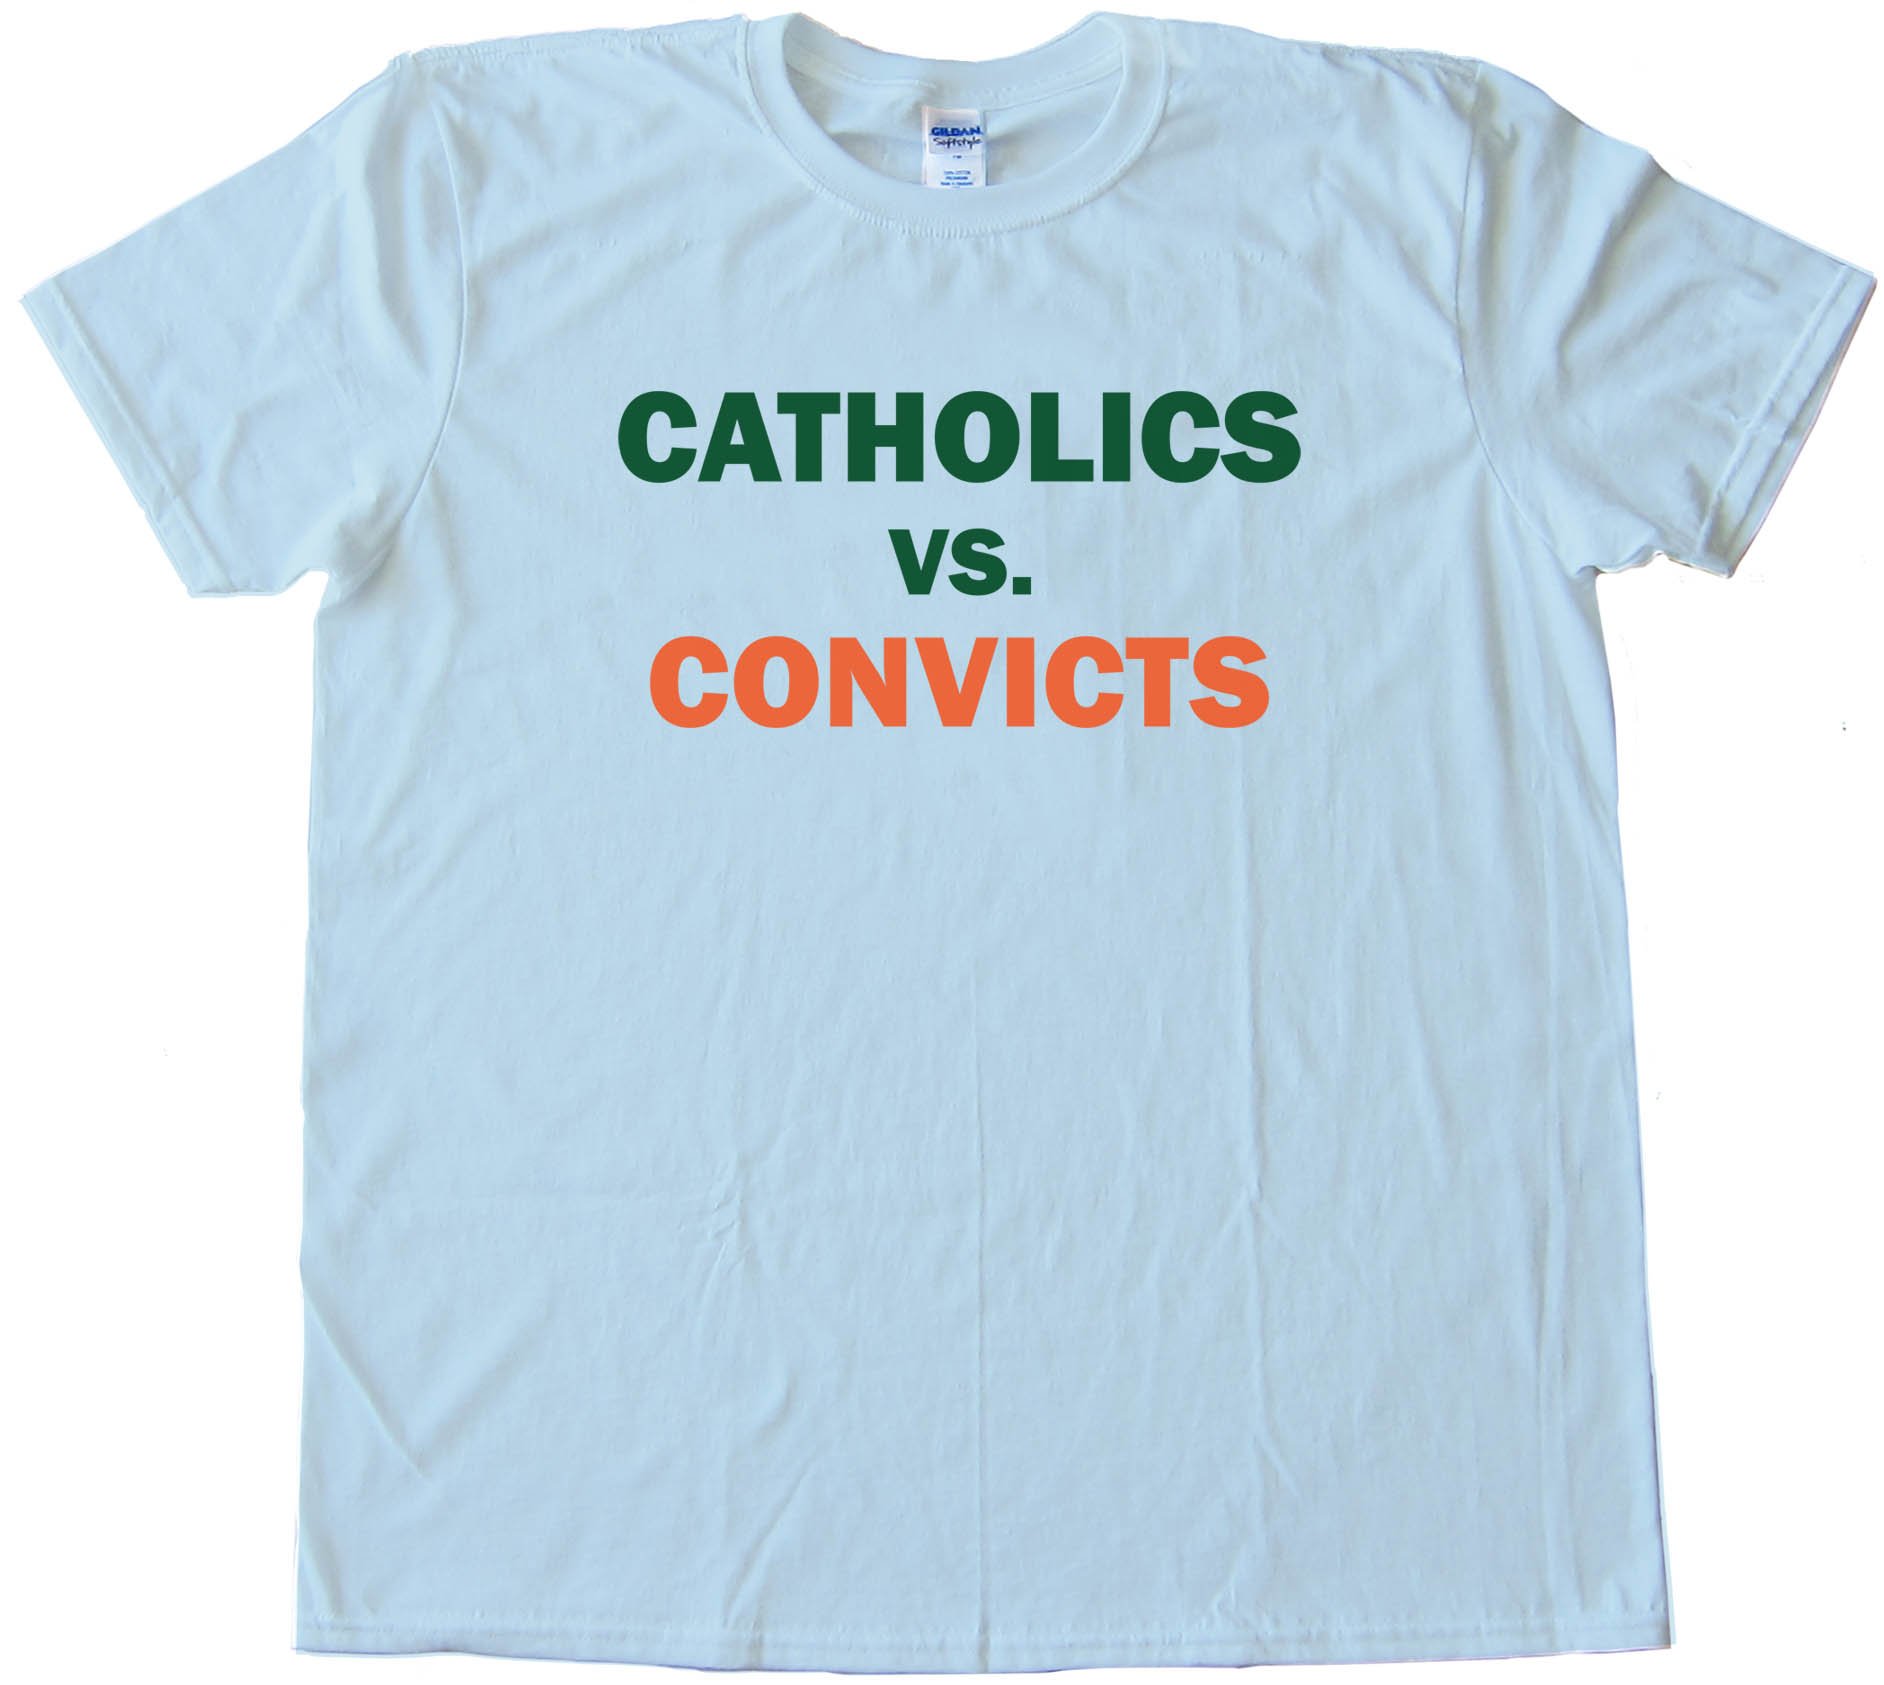 Catholics Vs. Convicts - Tee Shirt